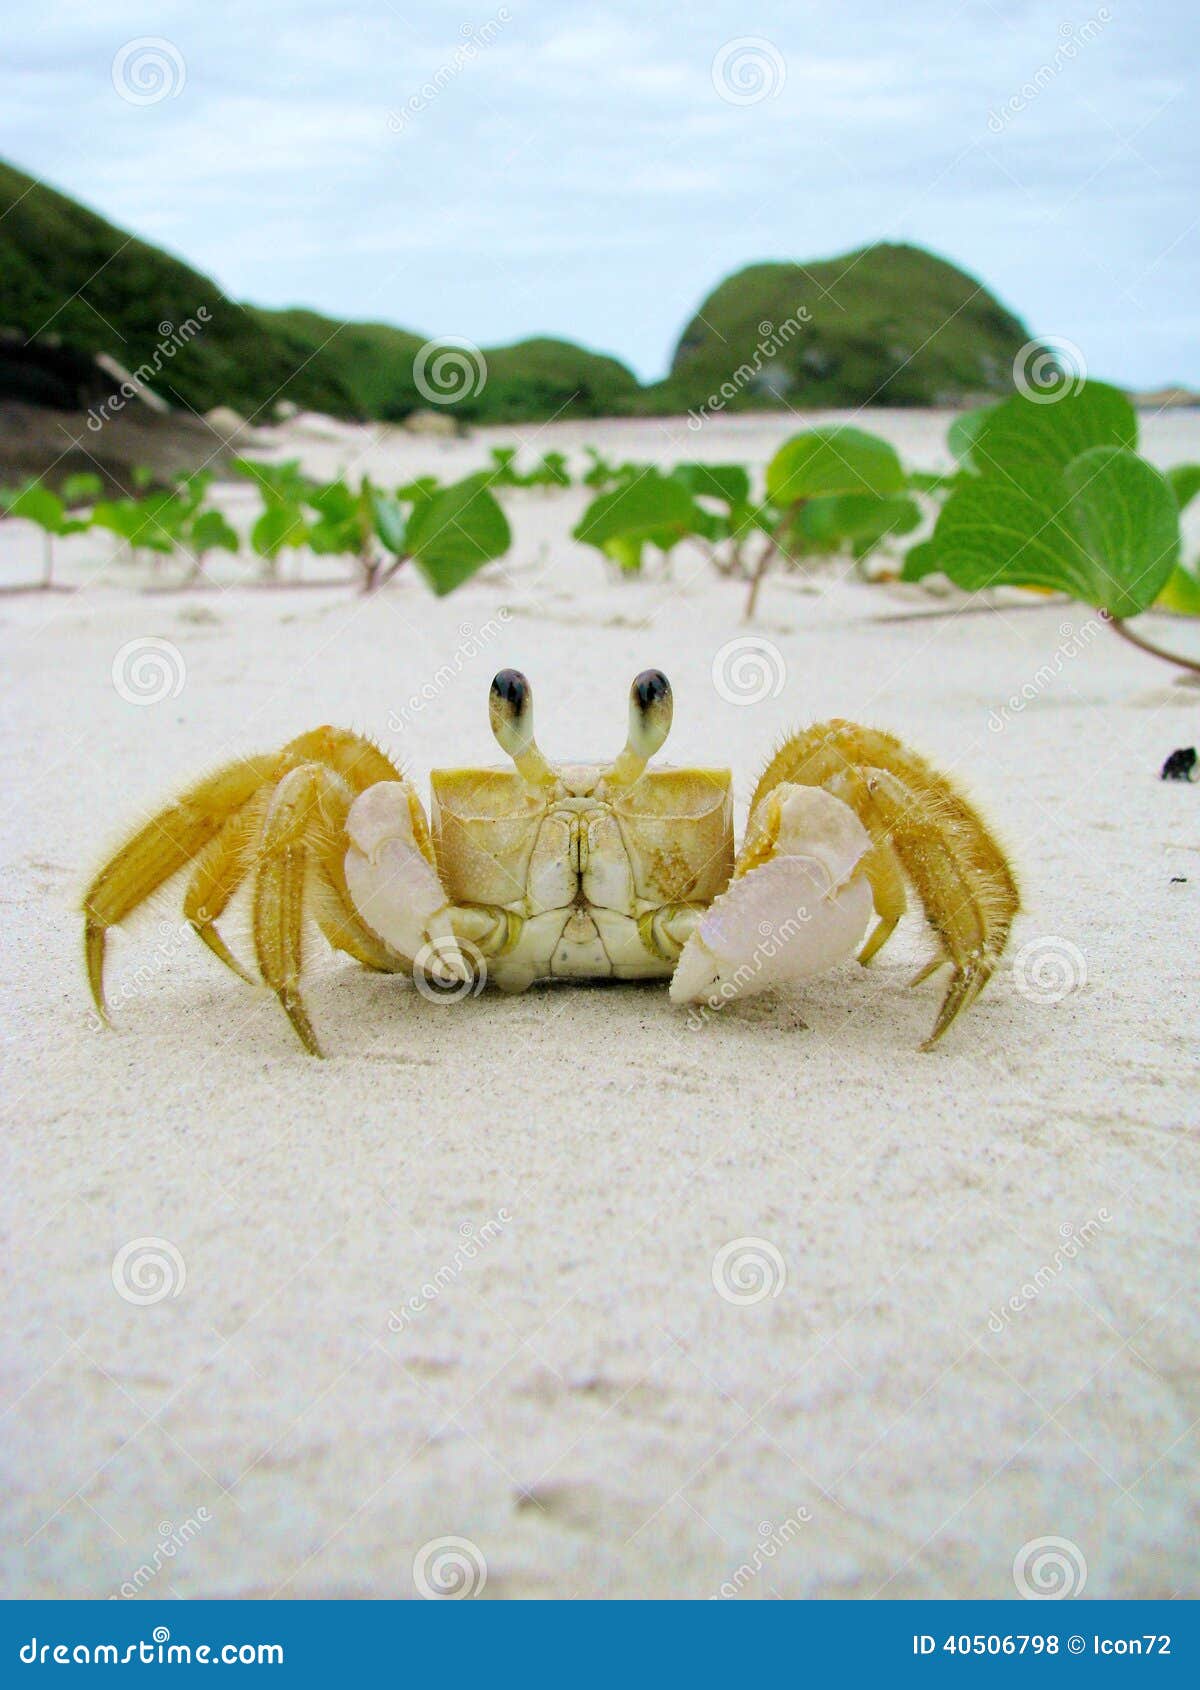 funny crab in a sandy wild beach of honey island (ilha do mel),